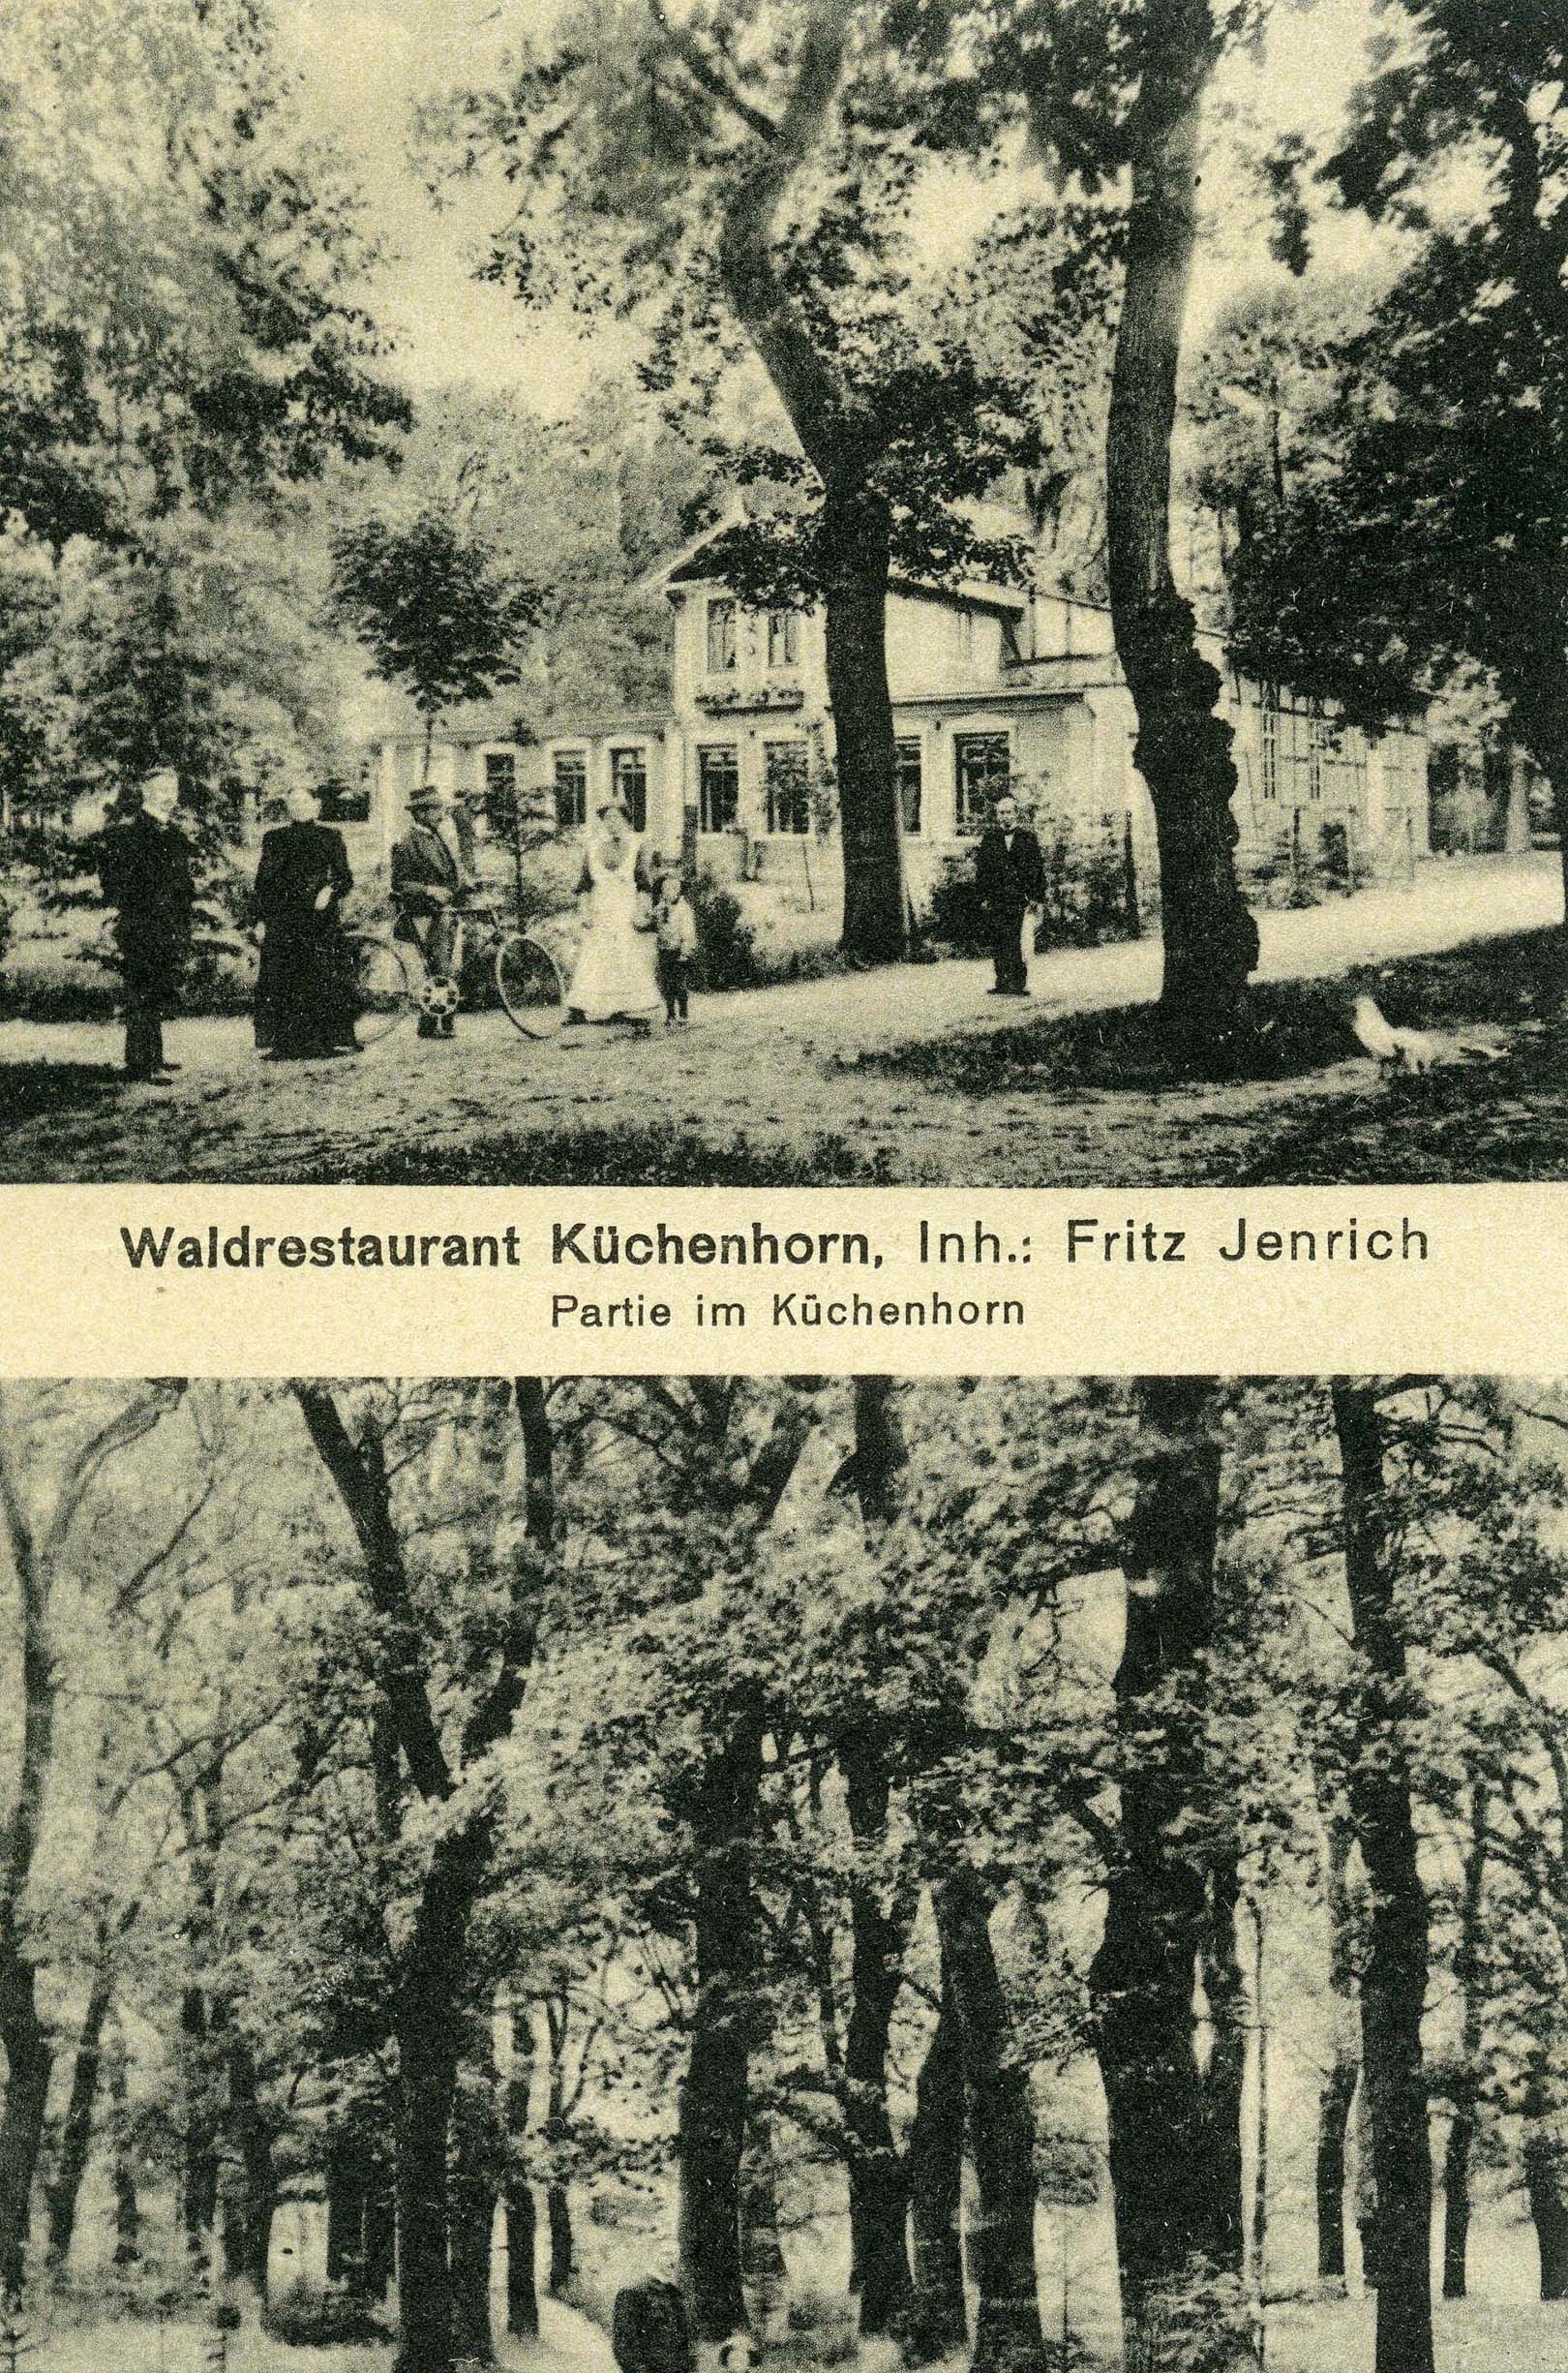 Postkarte, zweigeteilt, Küchenhorn, 1918 (Museum Wolmirstedt RR-F)